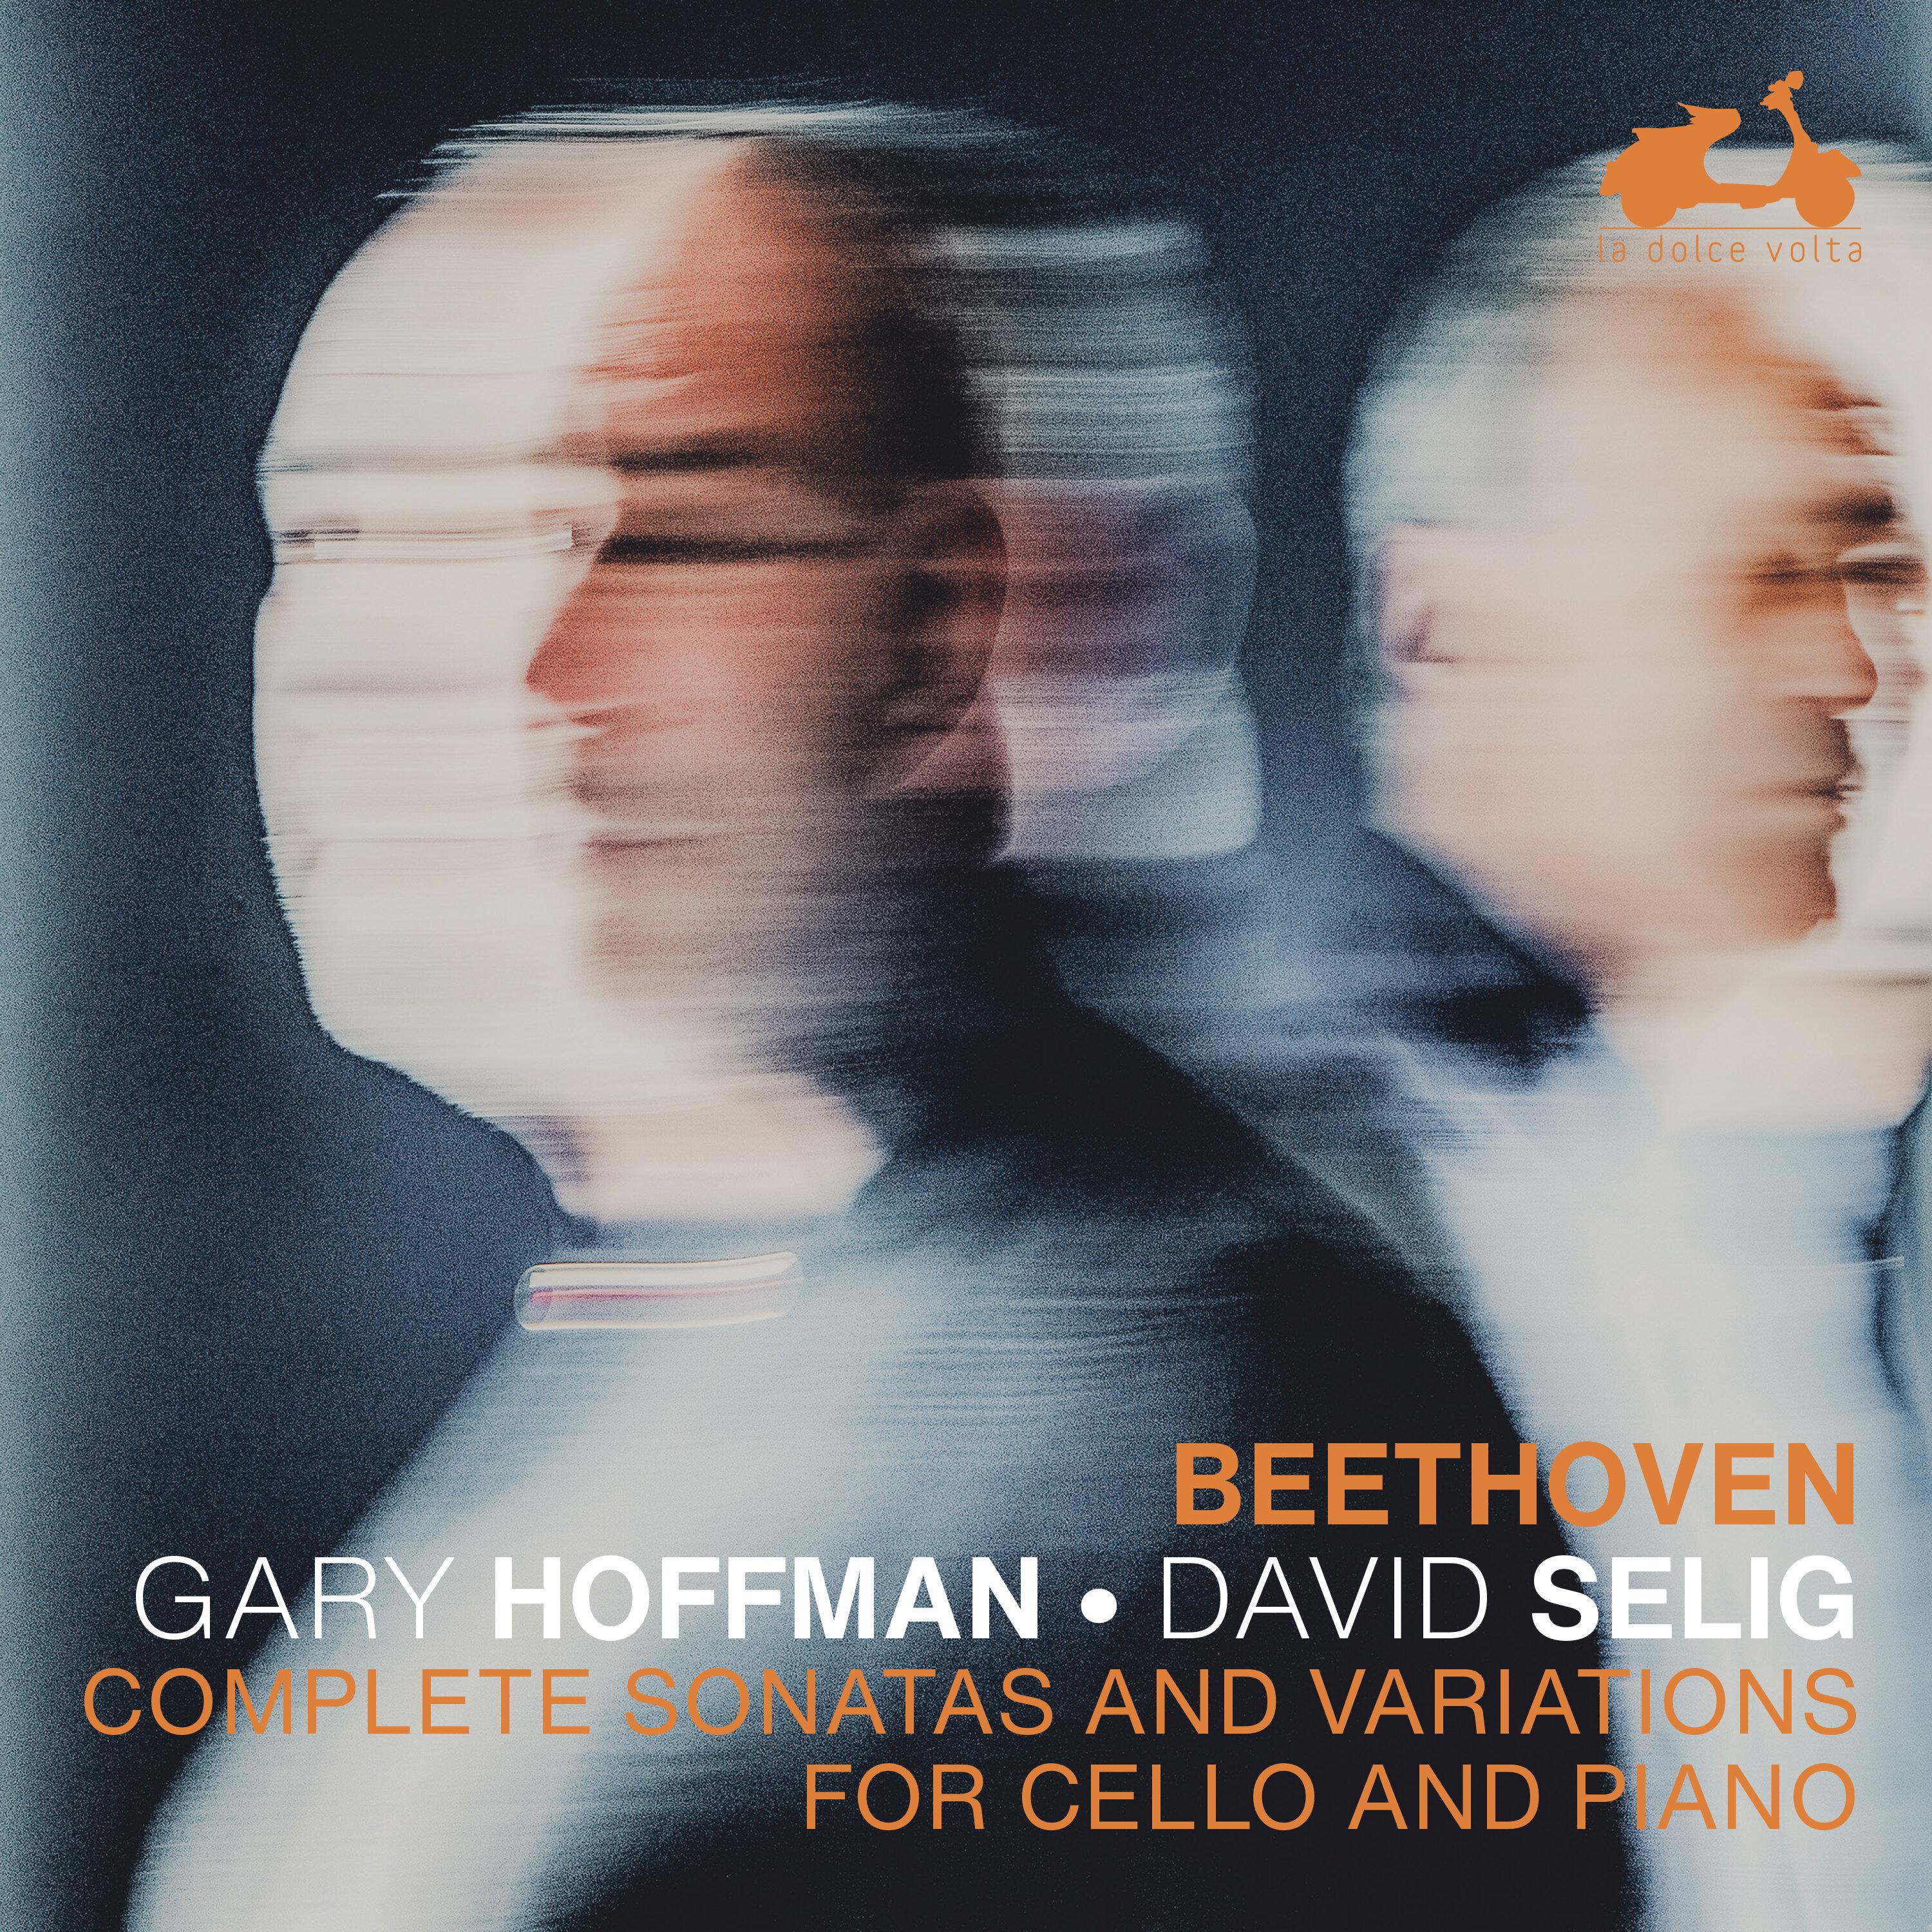 Gary Hoffman - Sonata for Cello and Piano No. 3 in A Major, Op. 69: II. Scherzo. Allegro molto